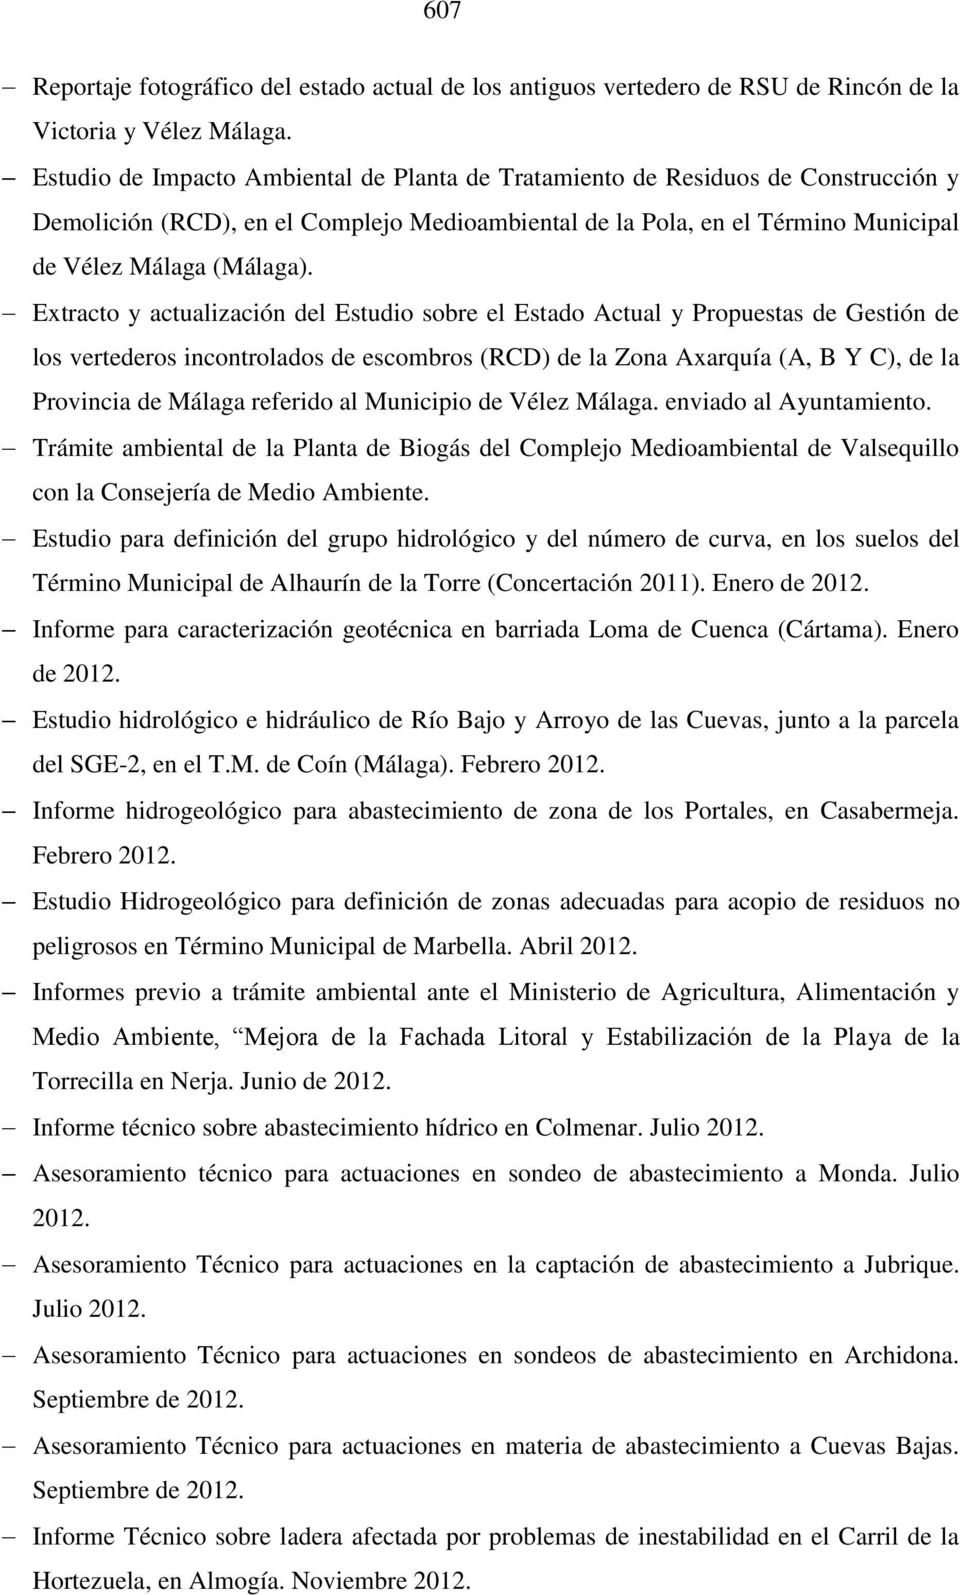 Extracto y actualización del Estudio sobre el Estado Actual y Propuestas de Gestión de los vertederos incontrolados de escombros (RCD) de la Zona Axarquía (A, B Y C), de la Provincia de Málaga